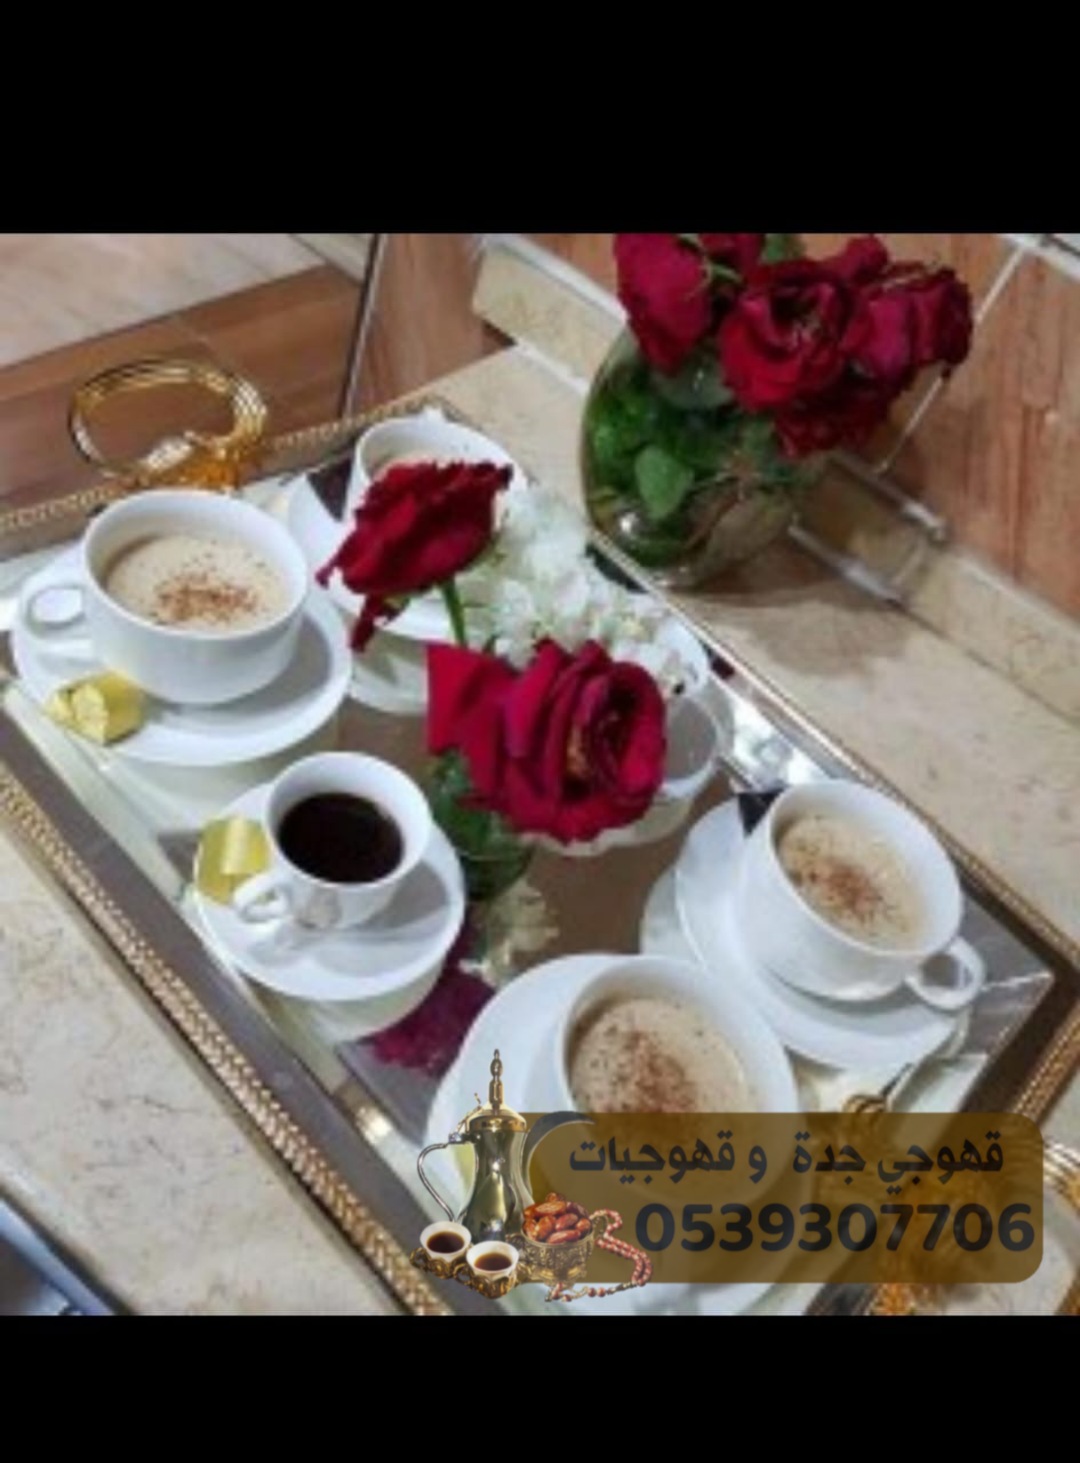 صبابين قهوة لإقامة حفلات و قهوجي في جدة 0539307706  170800977872674